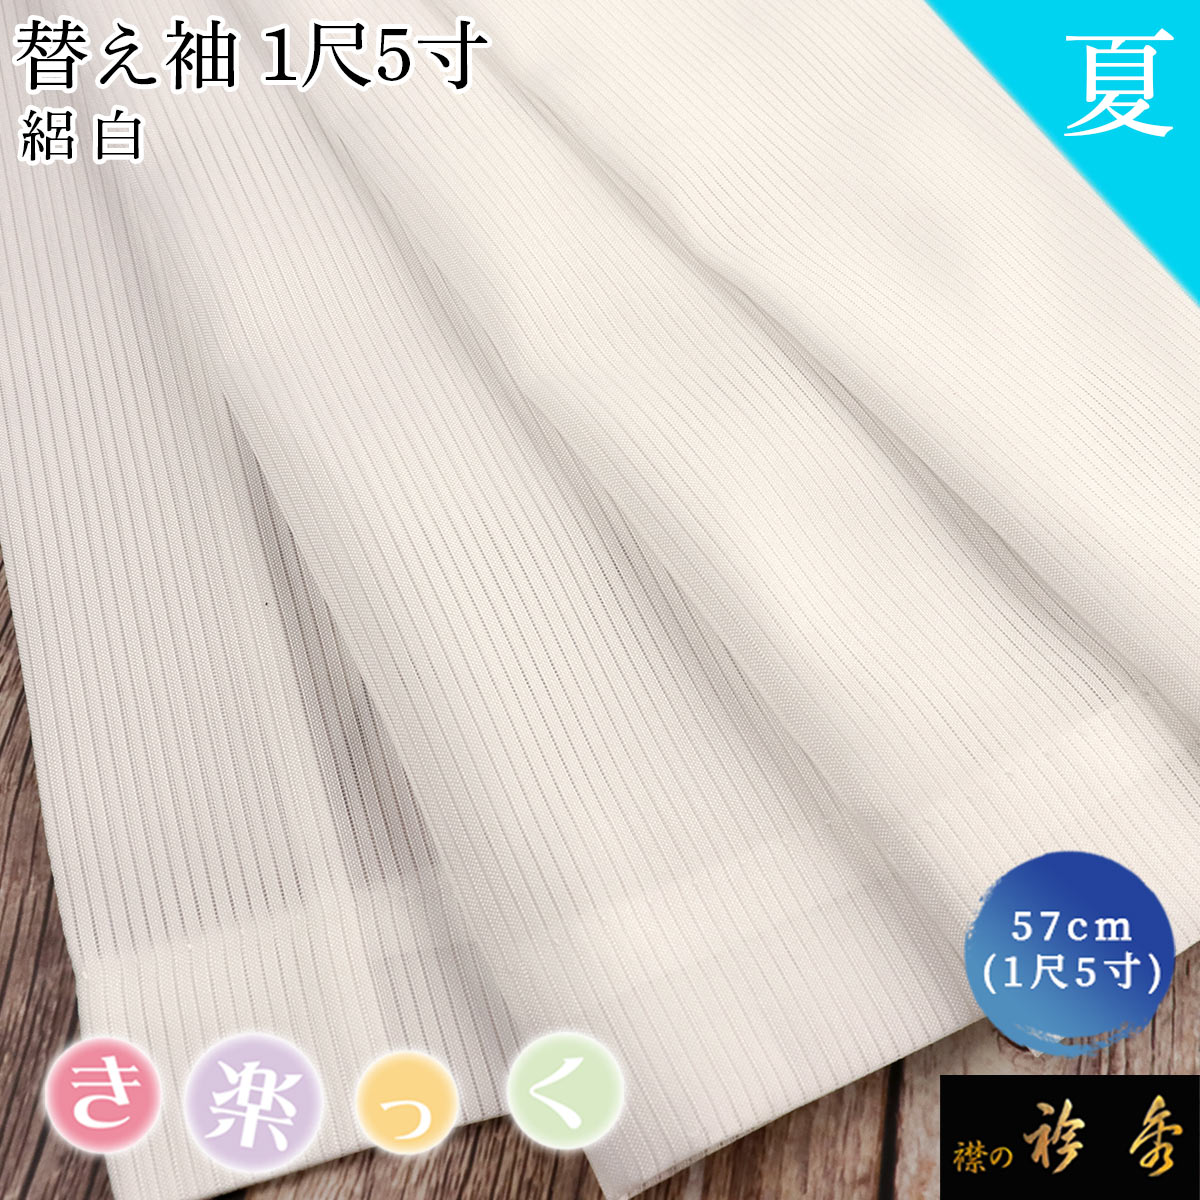 衿秀 公式 き楽っく 替え袖 きらっく 替袖 定番 かえそで 白 絽 1尺5寸 夏 洗える 簡単着付け 日本製 和装小物 和小物 えりひで すなお きものすなお eh